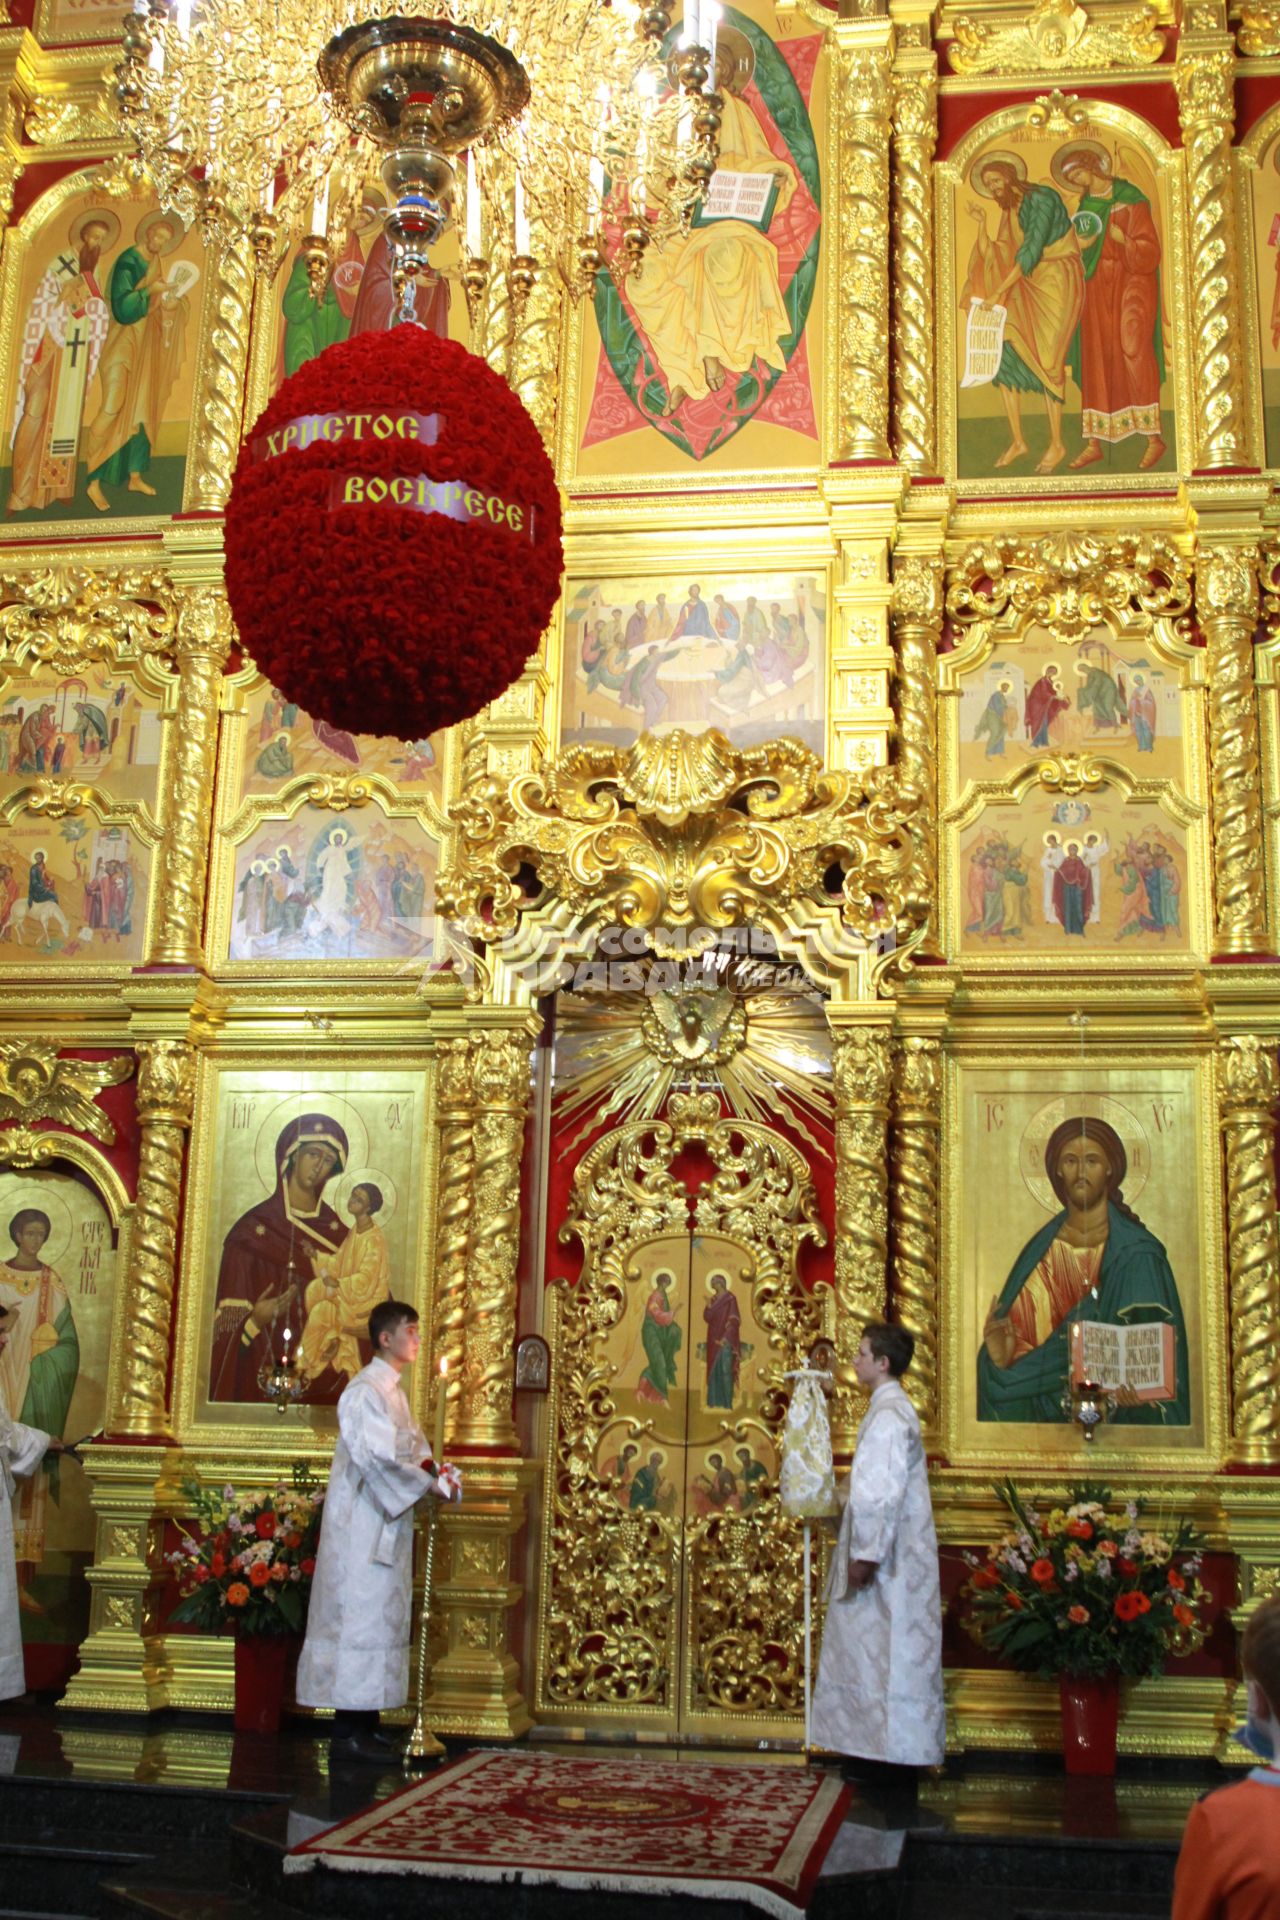 Иркутск.  Священнослужители во время пасхальной службы в храме.